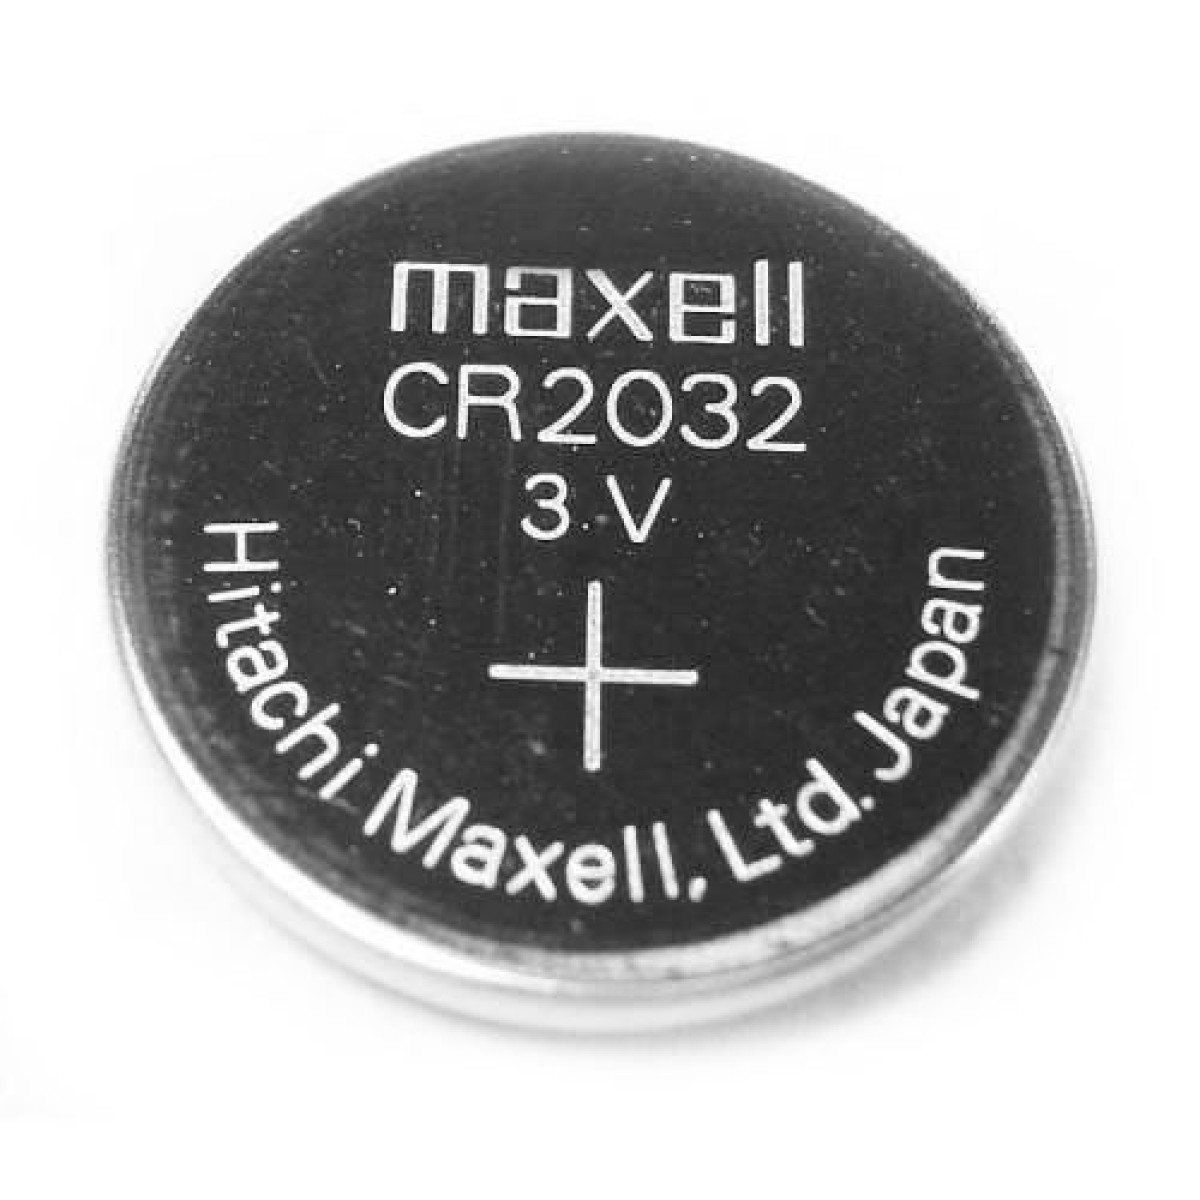  CR2032 - Batería de moneda de litio de 3 V, paquete de 15 pilas  de botón CR 2032, batería de larga duración de 3 voltios y 245 mAh para  reloj, llave